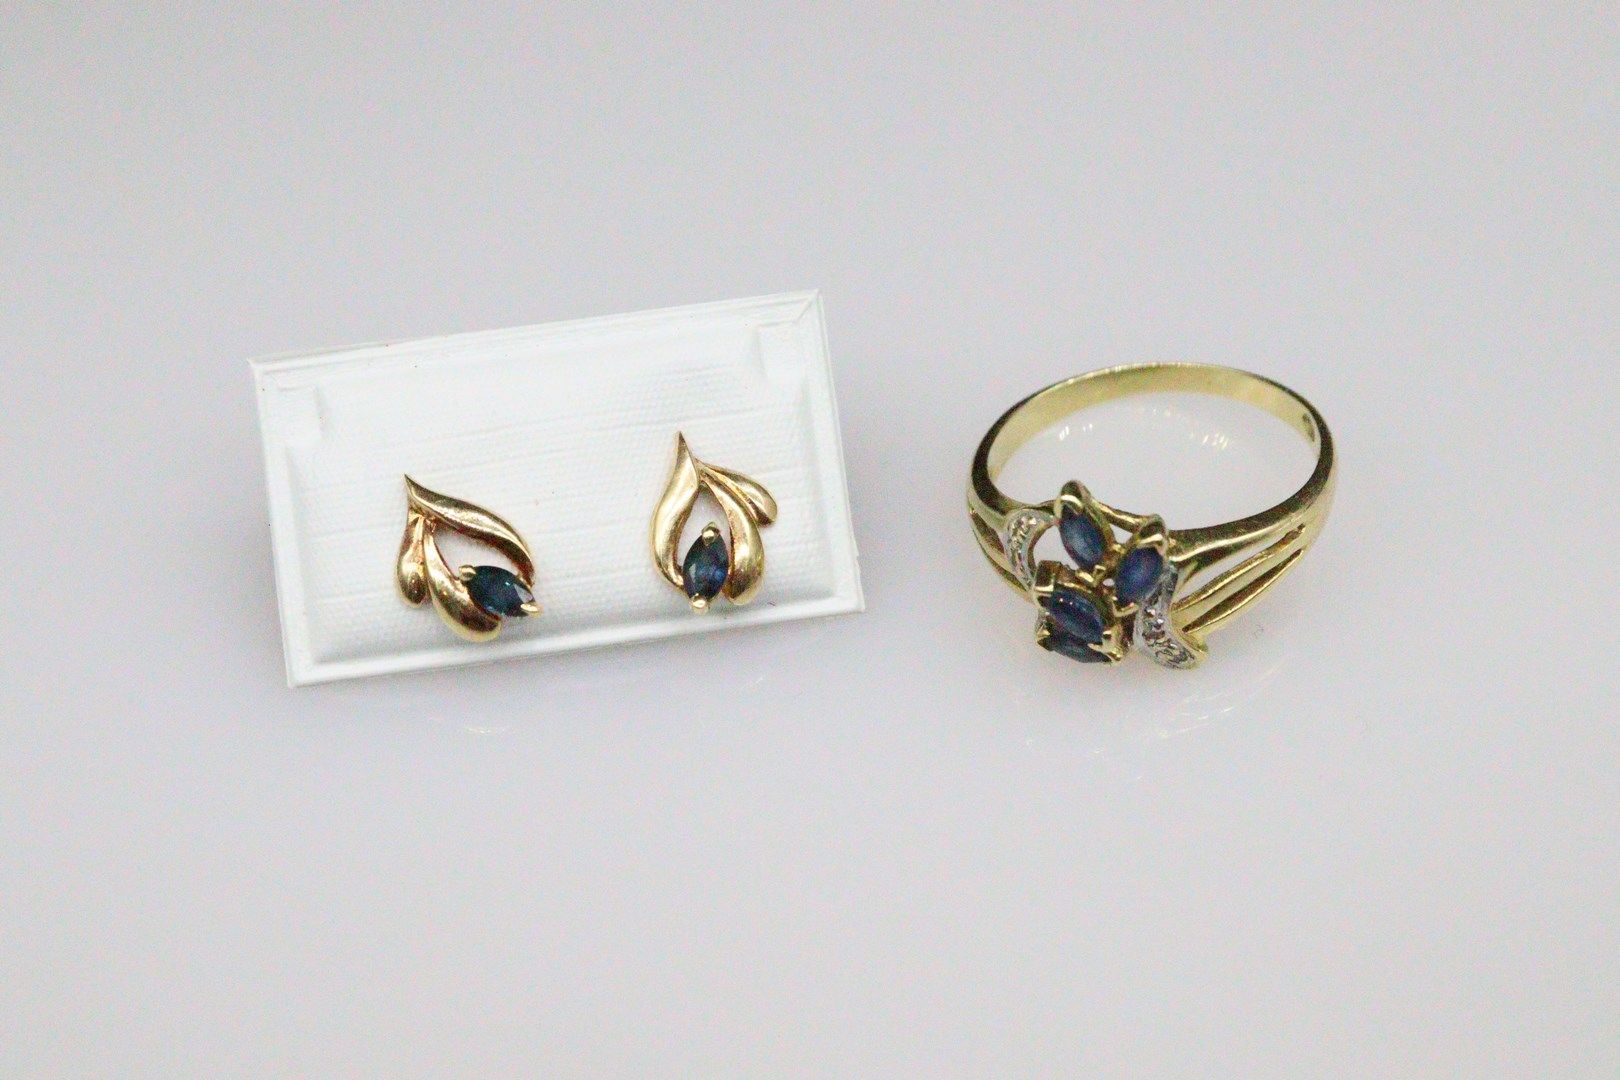 Null AC
18K(750)黄金半成品，包括一个镶嵌有四颗杏形合成蓝宝石的机芯戒指和一对镶嵌有两颗合成蓝宝石的耳钉。

总毛重：3.80克。